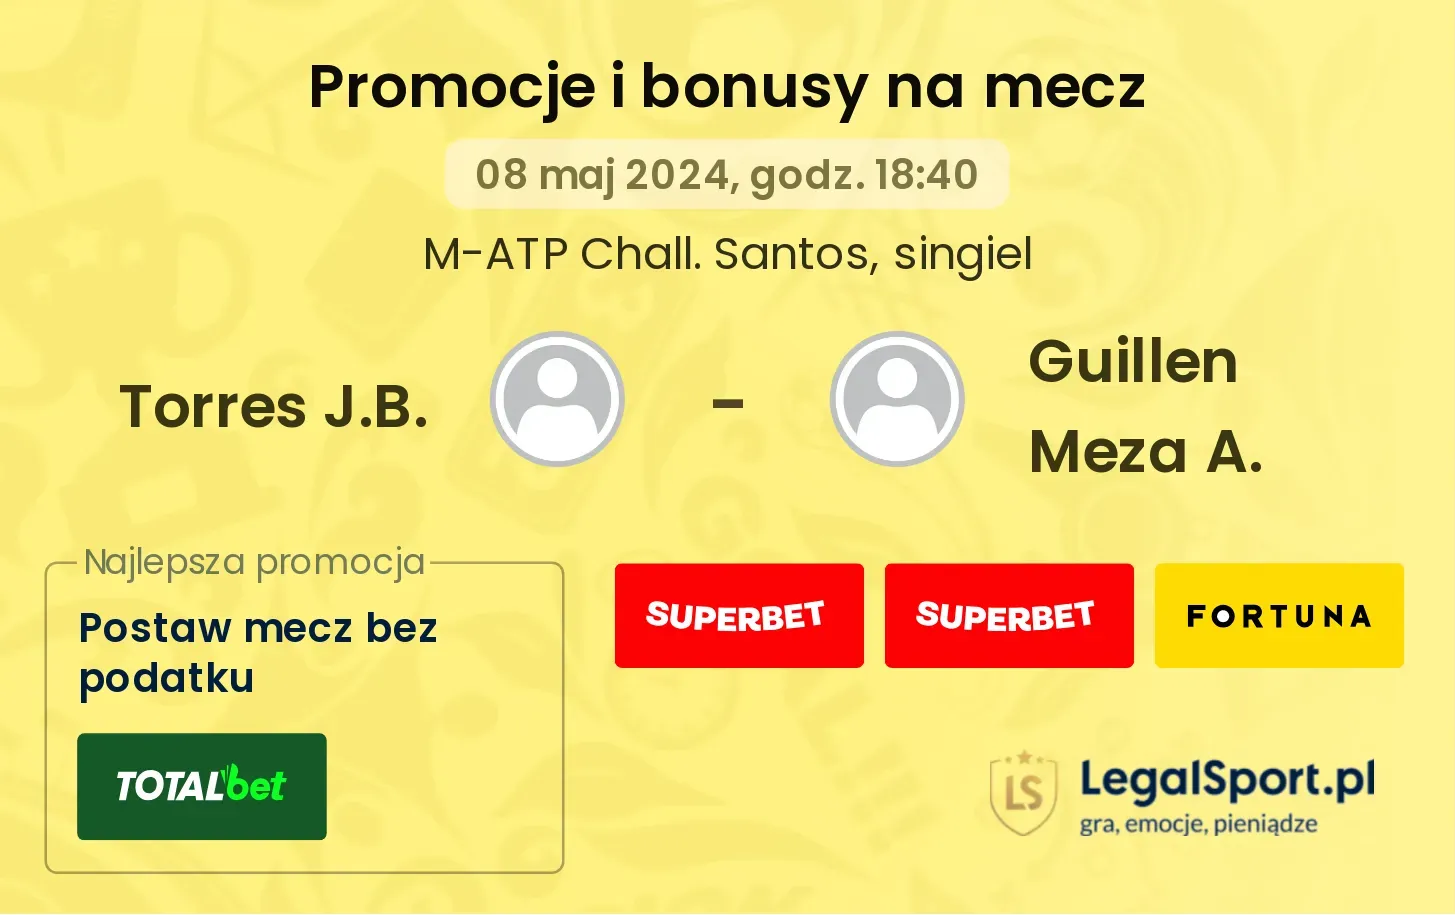 Torres J.B. - Guillen Meza A. promocje bonusy na mecz